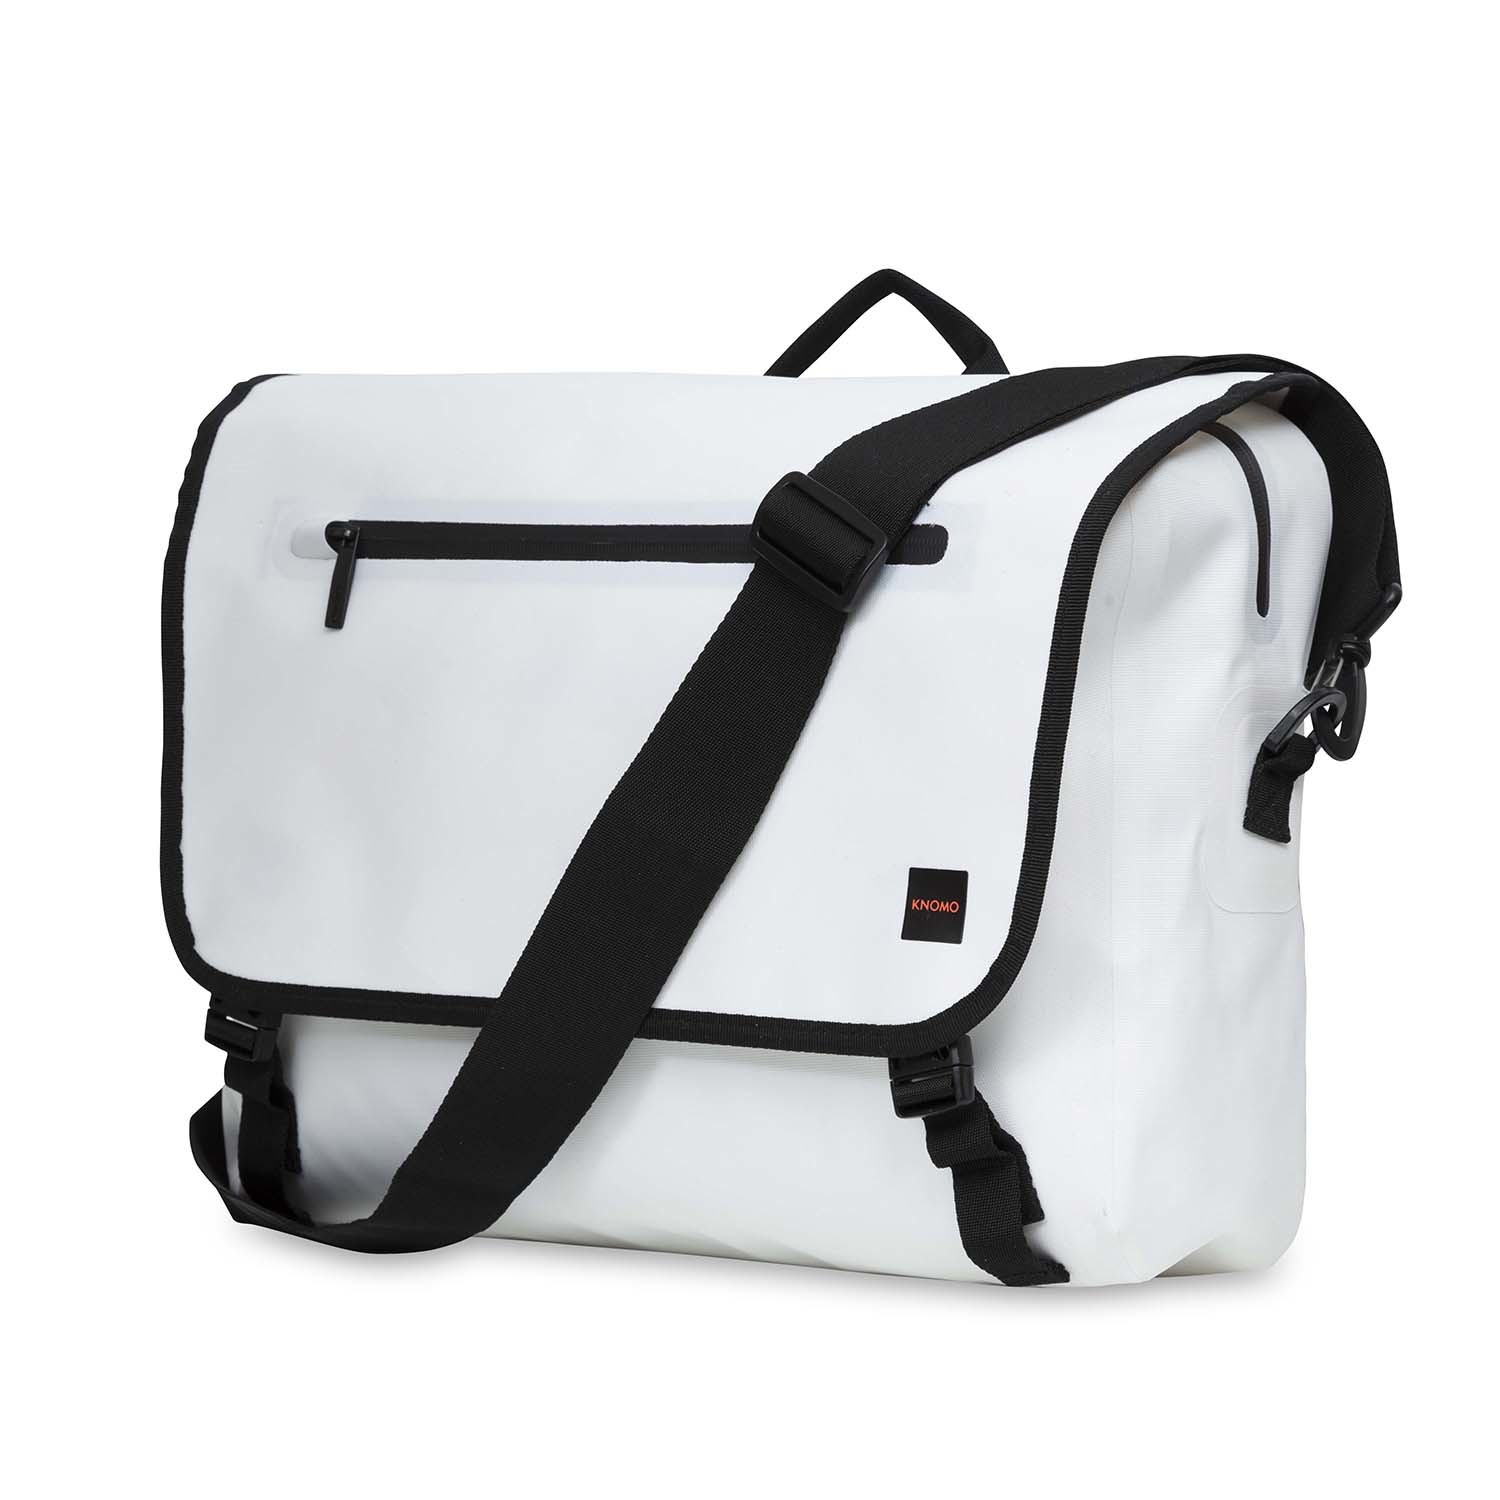 Rupert Laptop Messenger Bag // White - Knomo Bags - Touch of Modern